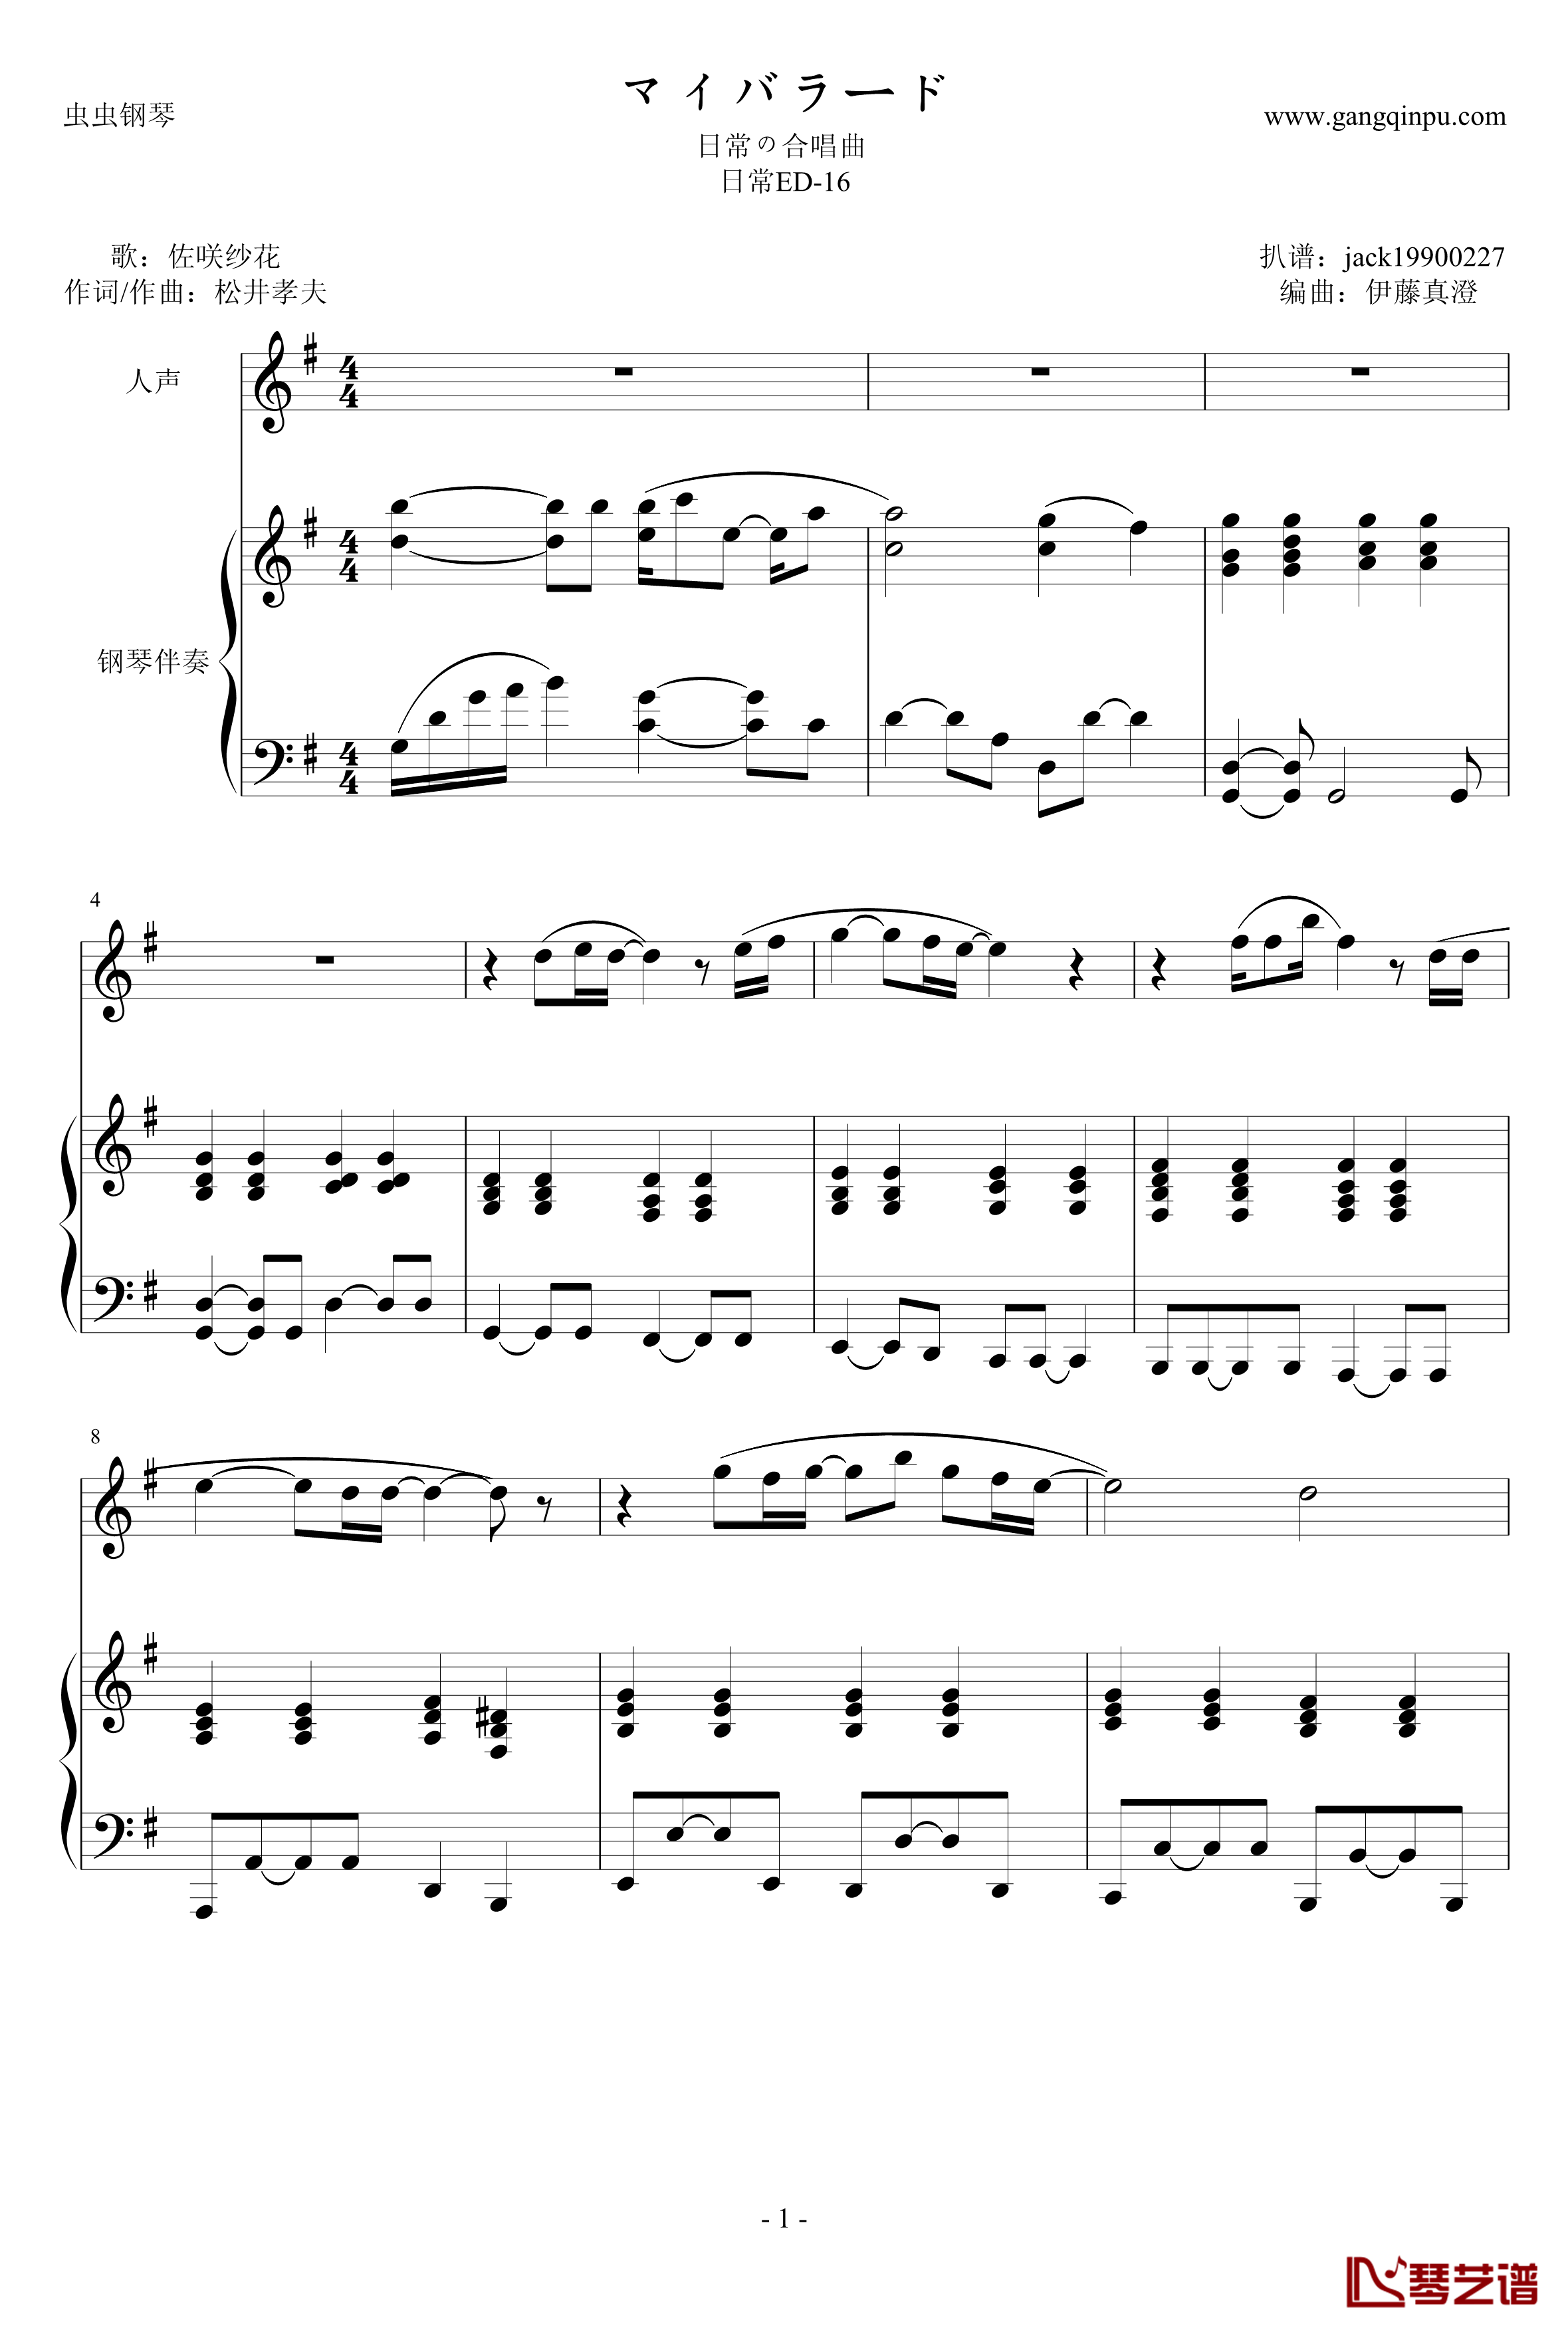 マイバラード钢琴谱-钢琴伴奏谱-日常ED-161